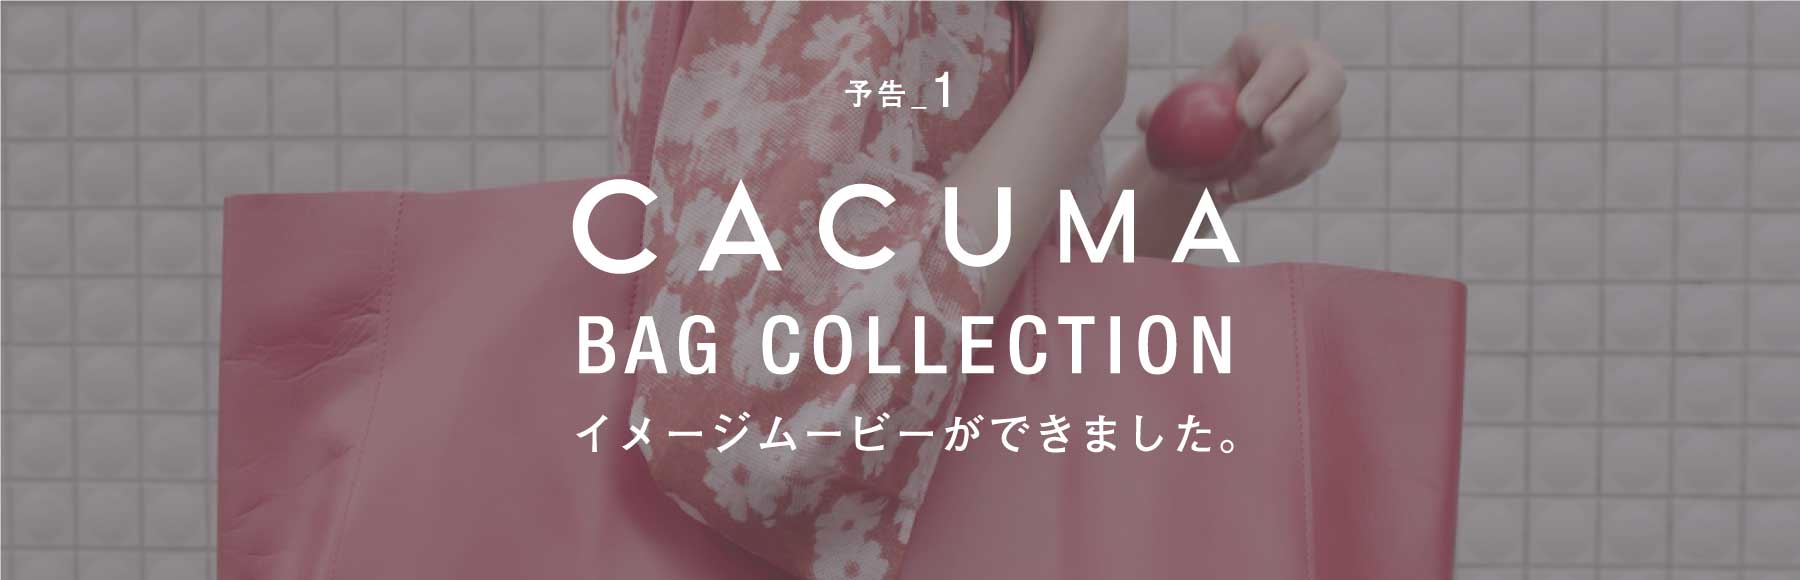 予告1 CACUMA BAG COLLECTION イメージムービーができました。